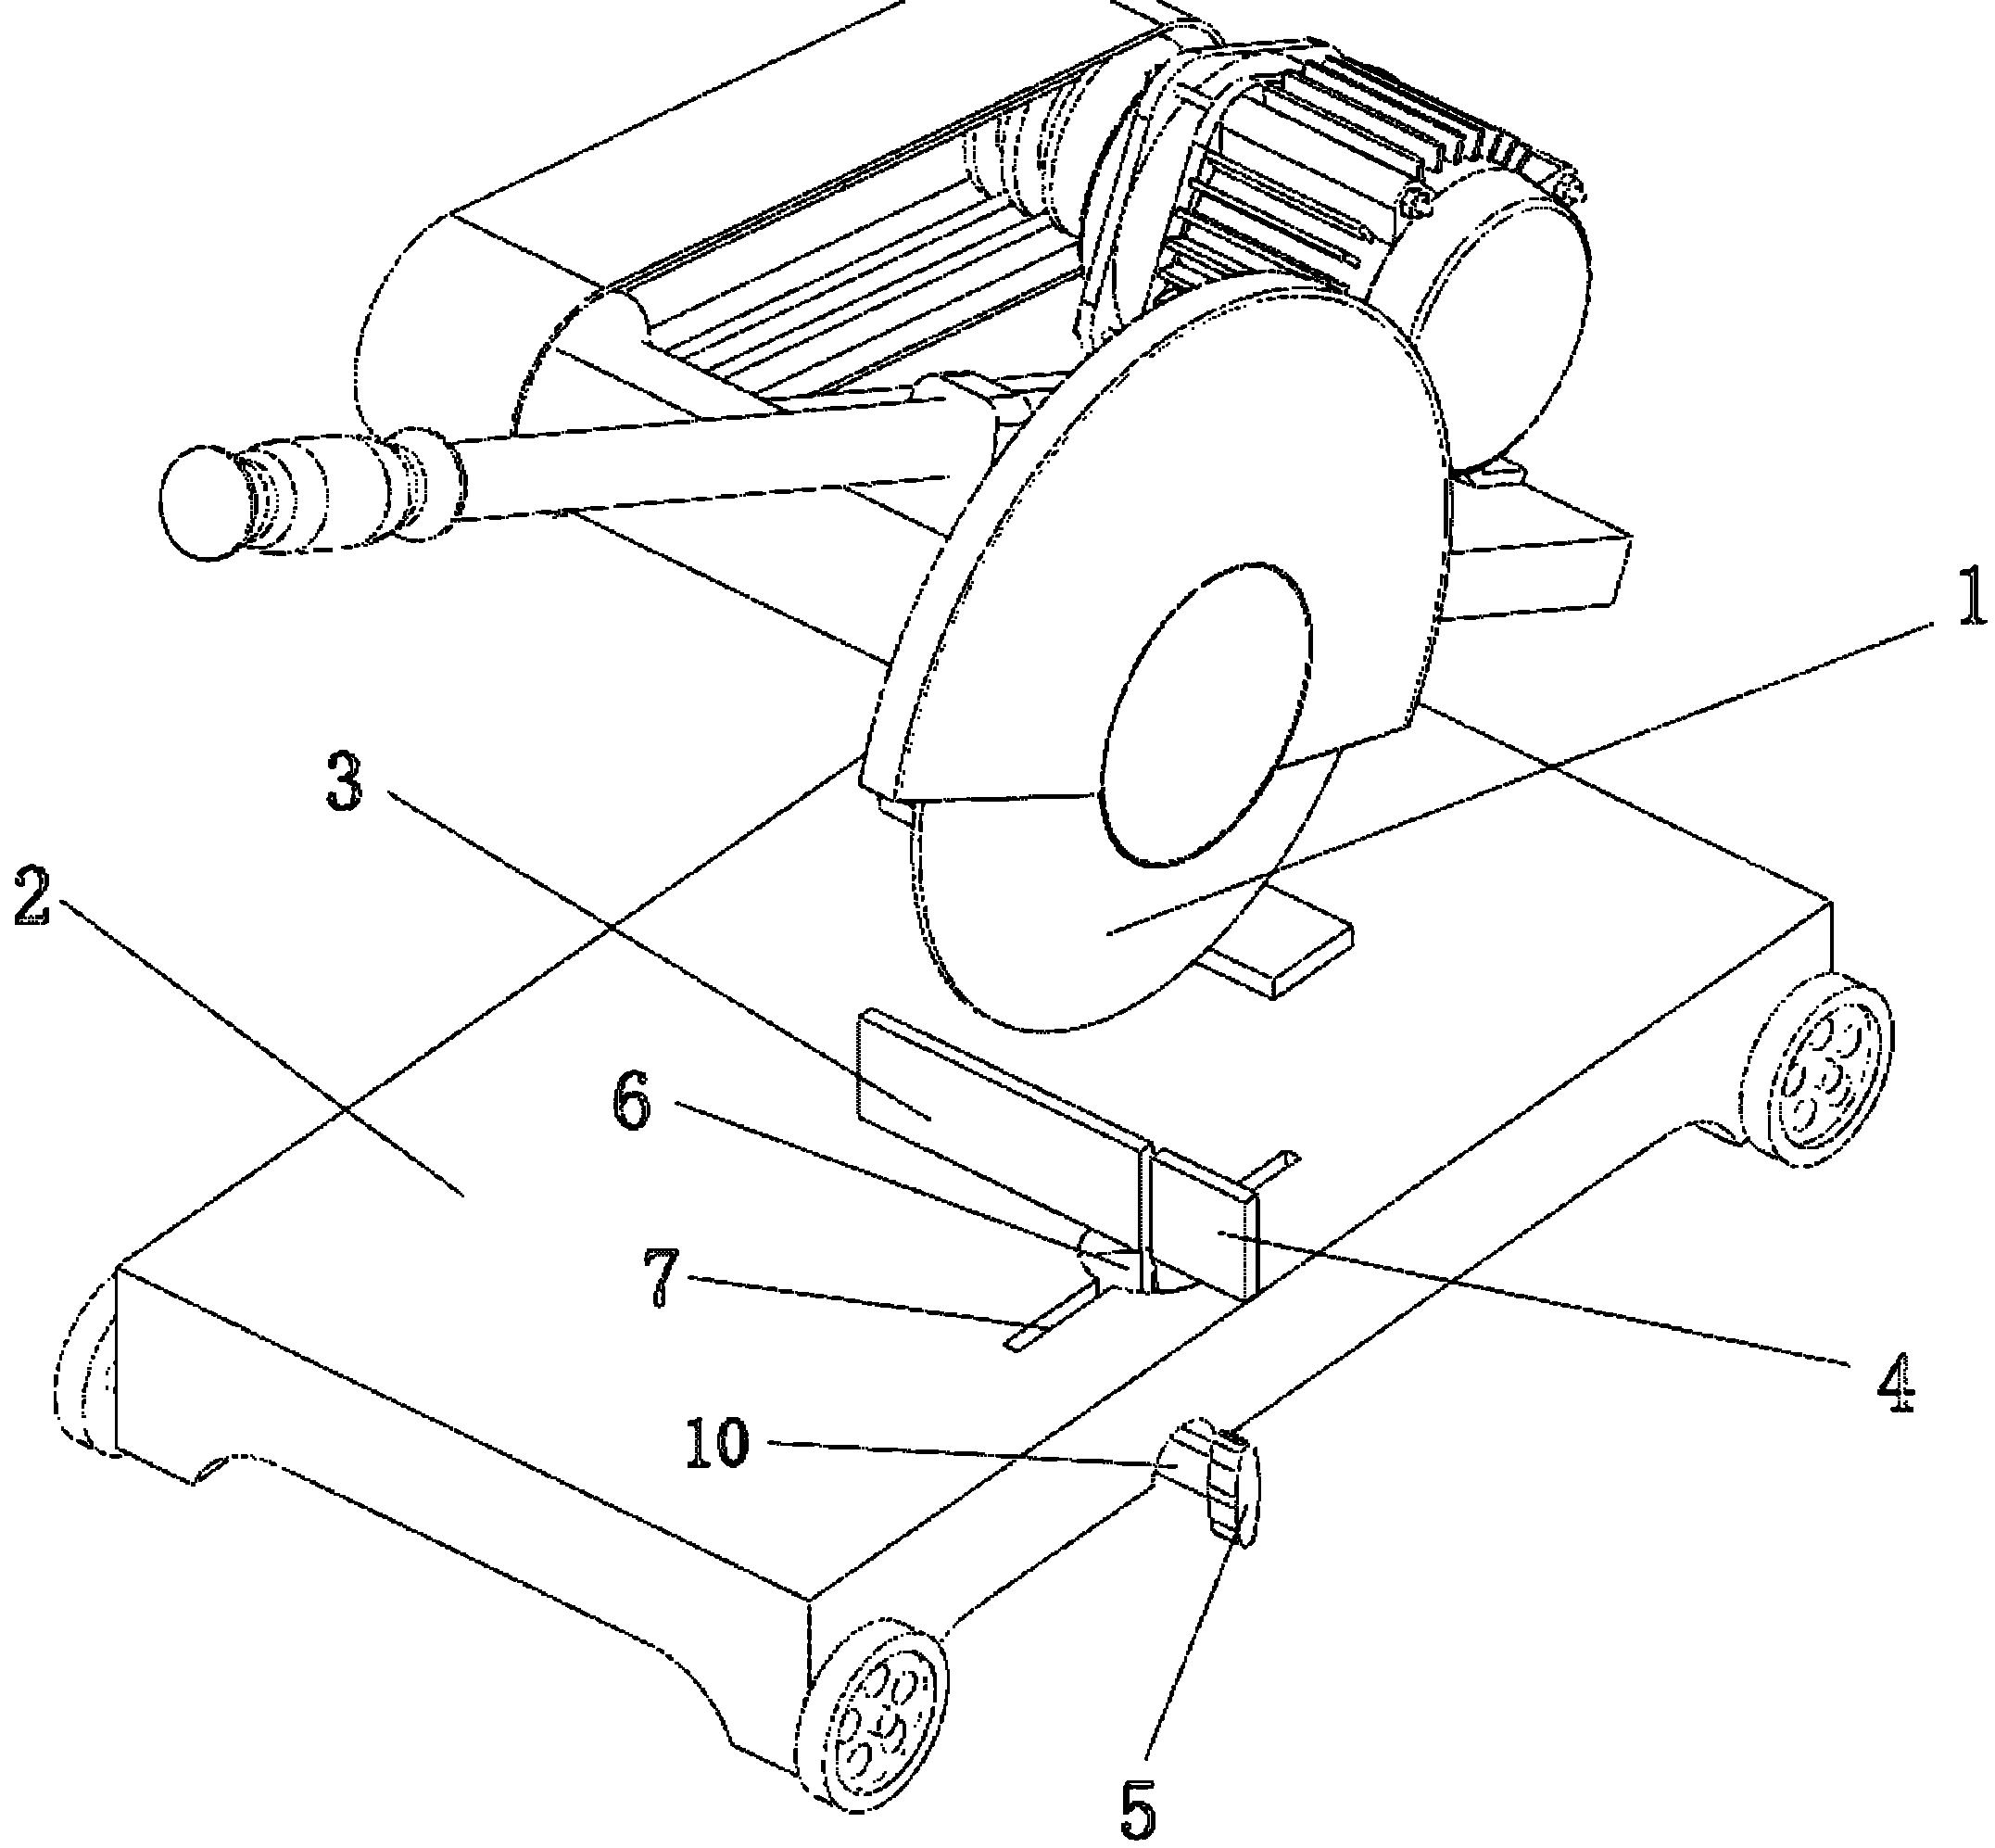 摘要附图摘要一种带双旋转挡板的金属切割机,属机械工具的一个技术